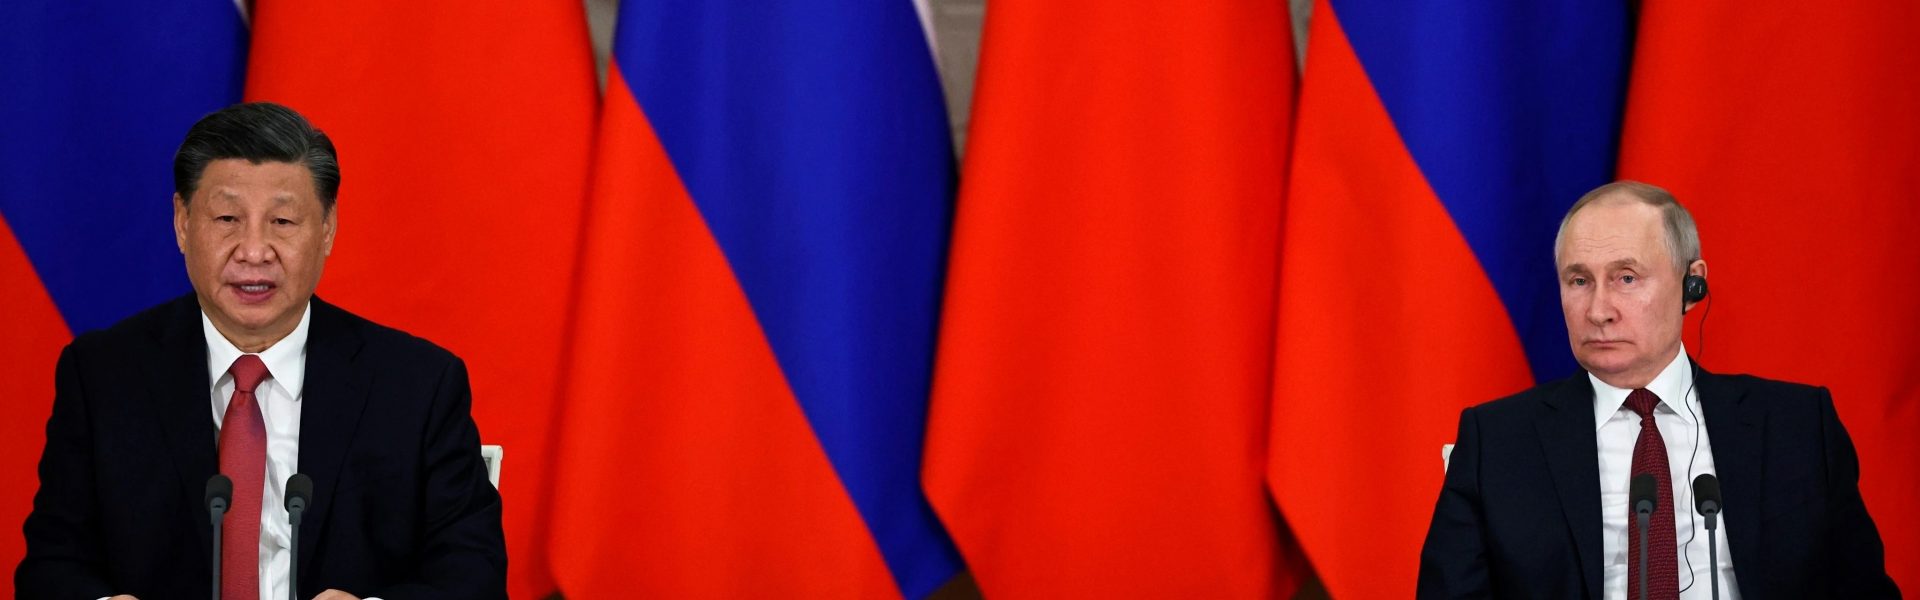 El Pacto del siglo y el gasoducto que Putin no pudo conseguir en su cumbre con Xi Jinping